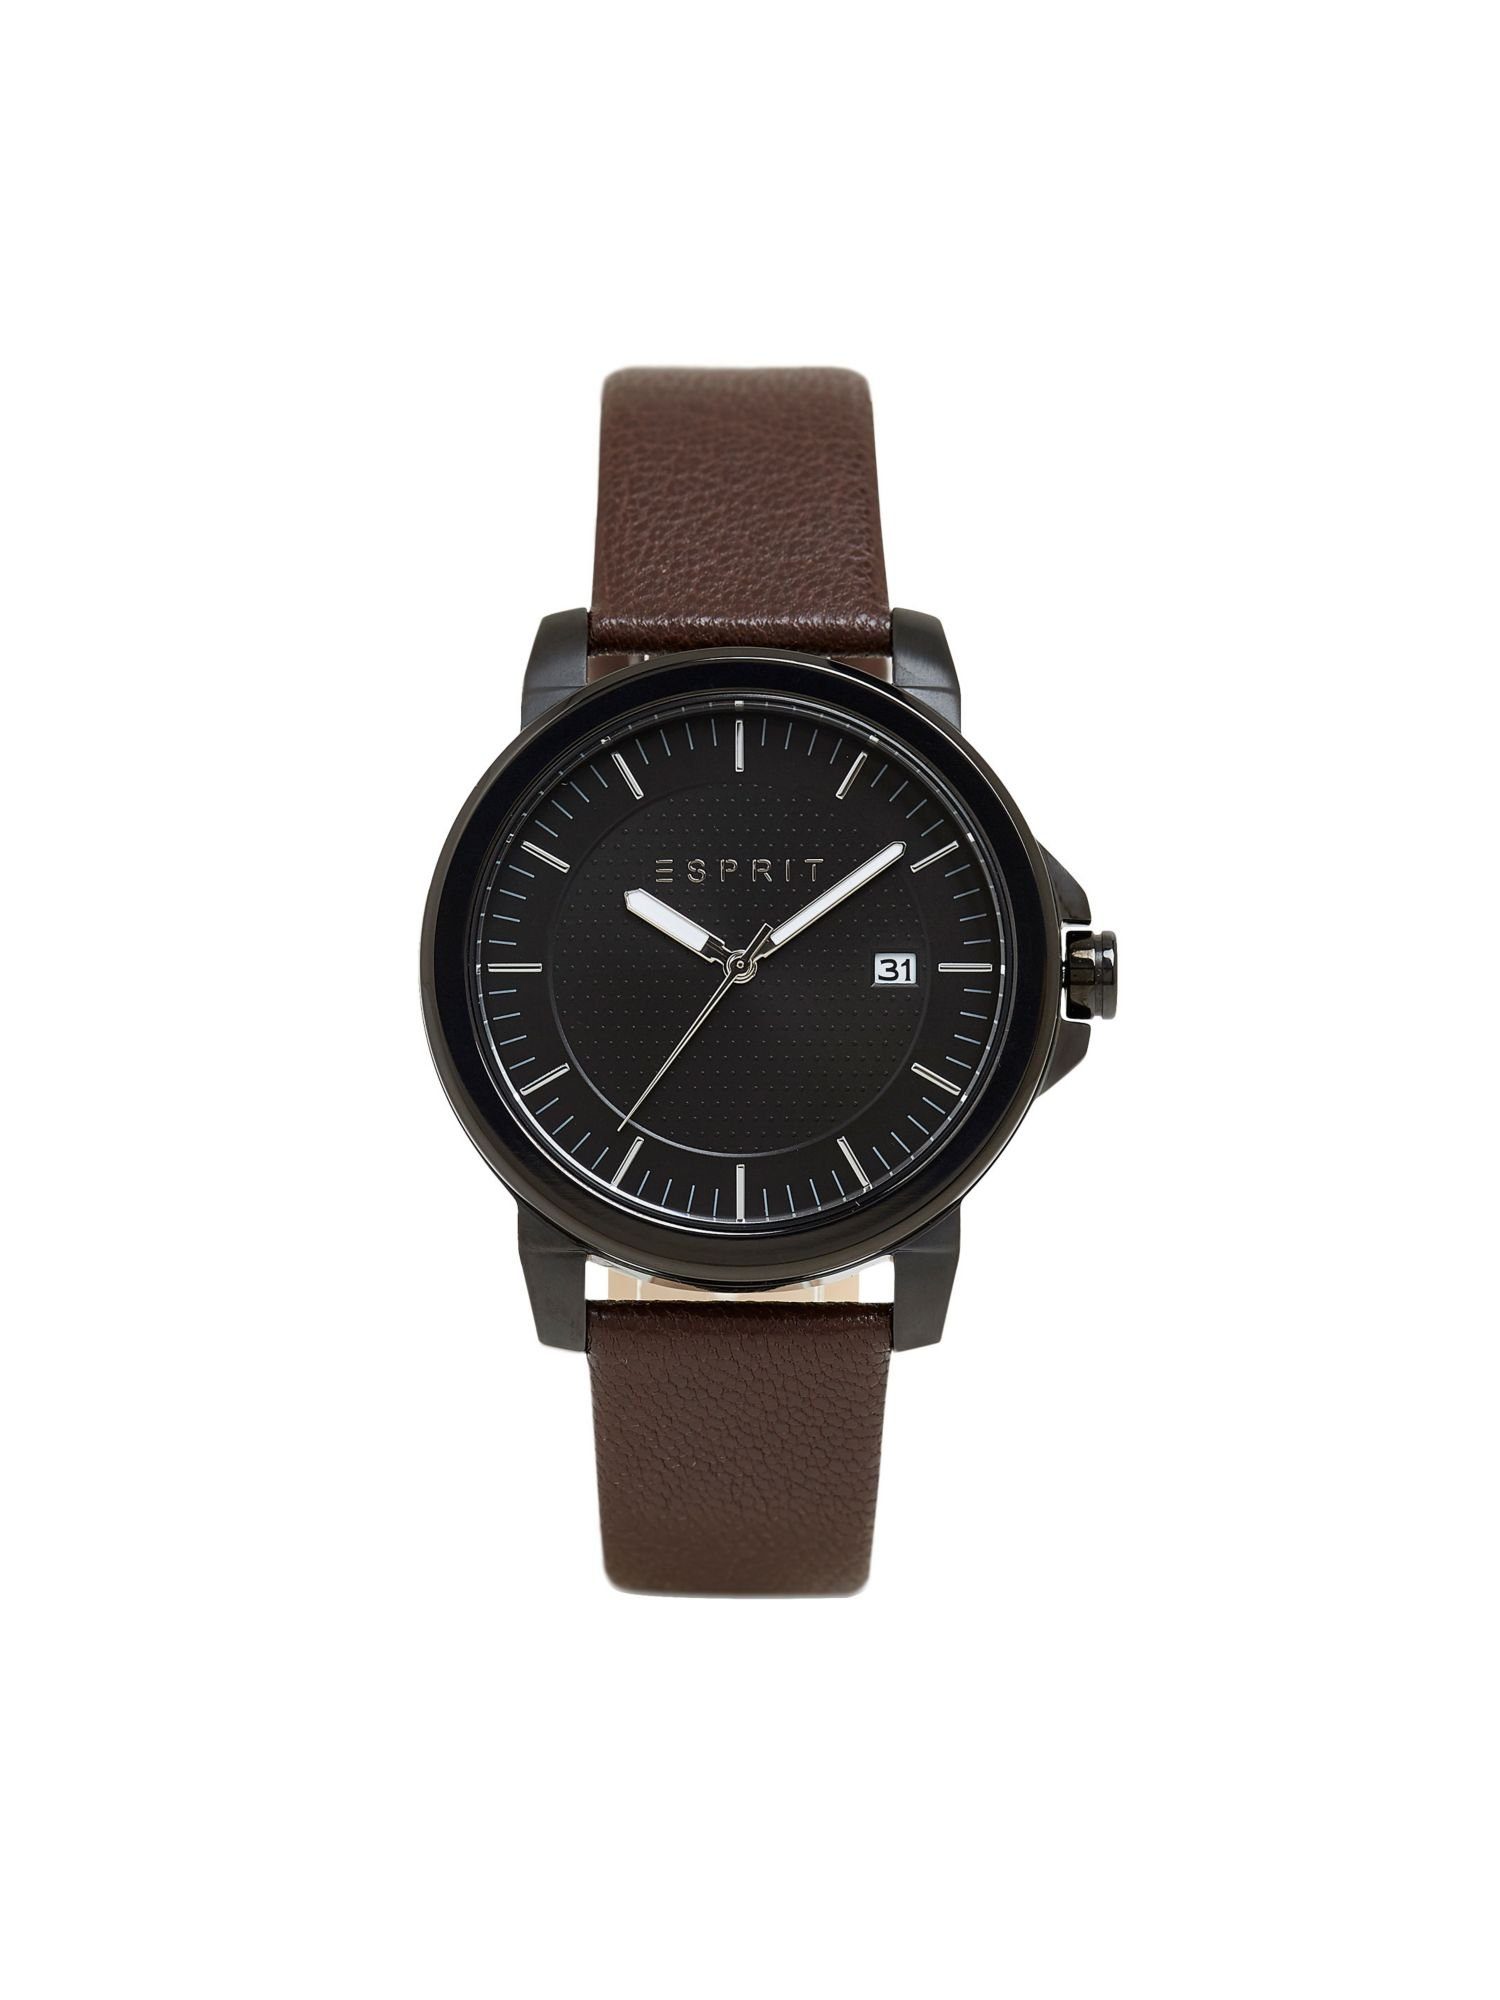 Esprit Quarzuhr Edelstahl-Uhr Leder-Armband mit